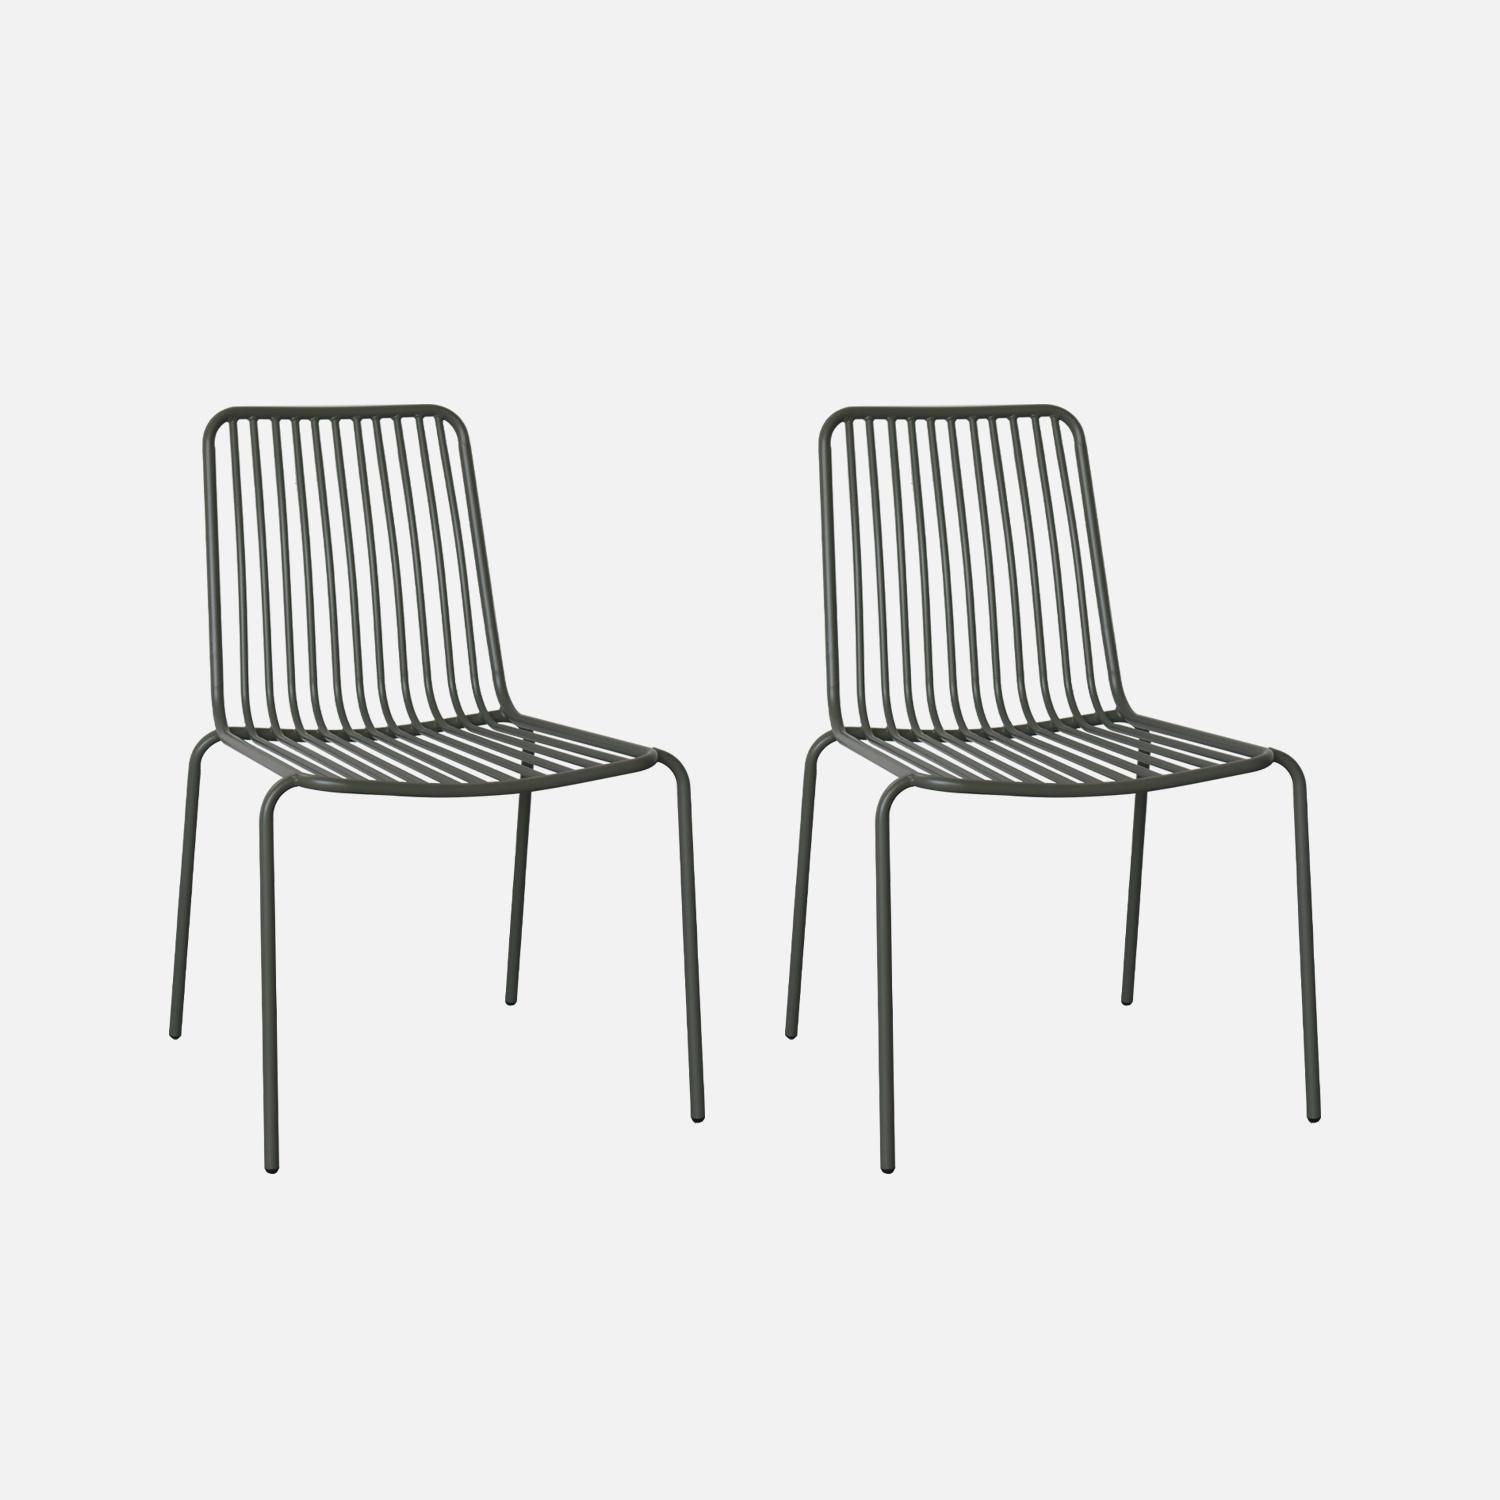 Lot de 2 chaises de jardin en acier anthracite , empilables, design linéaire ,sweeek,Photo3